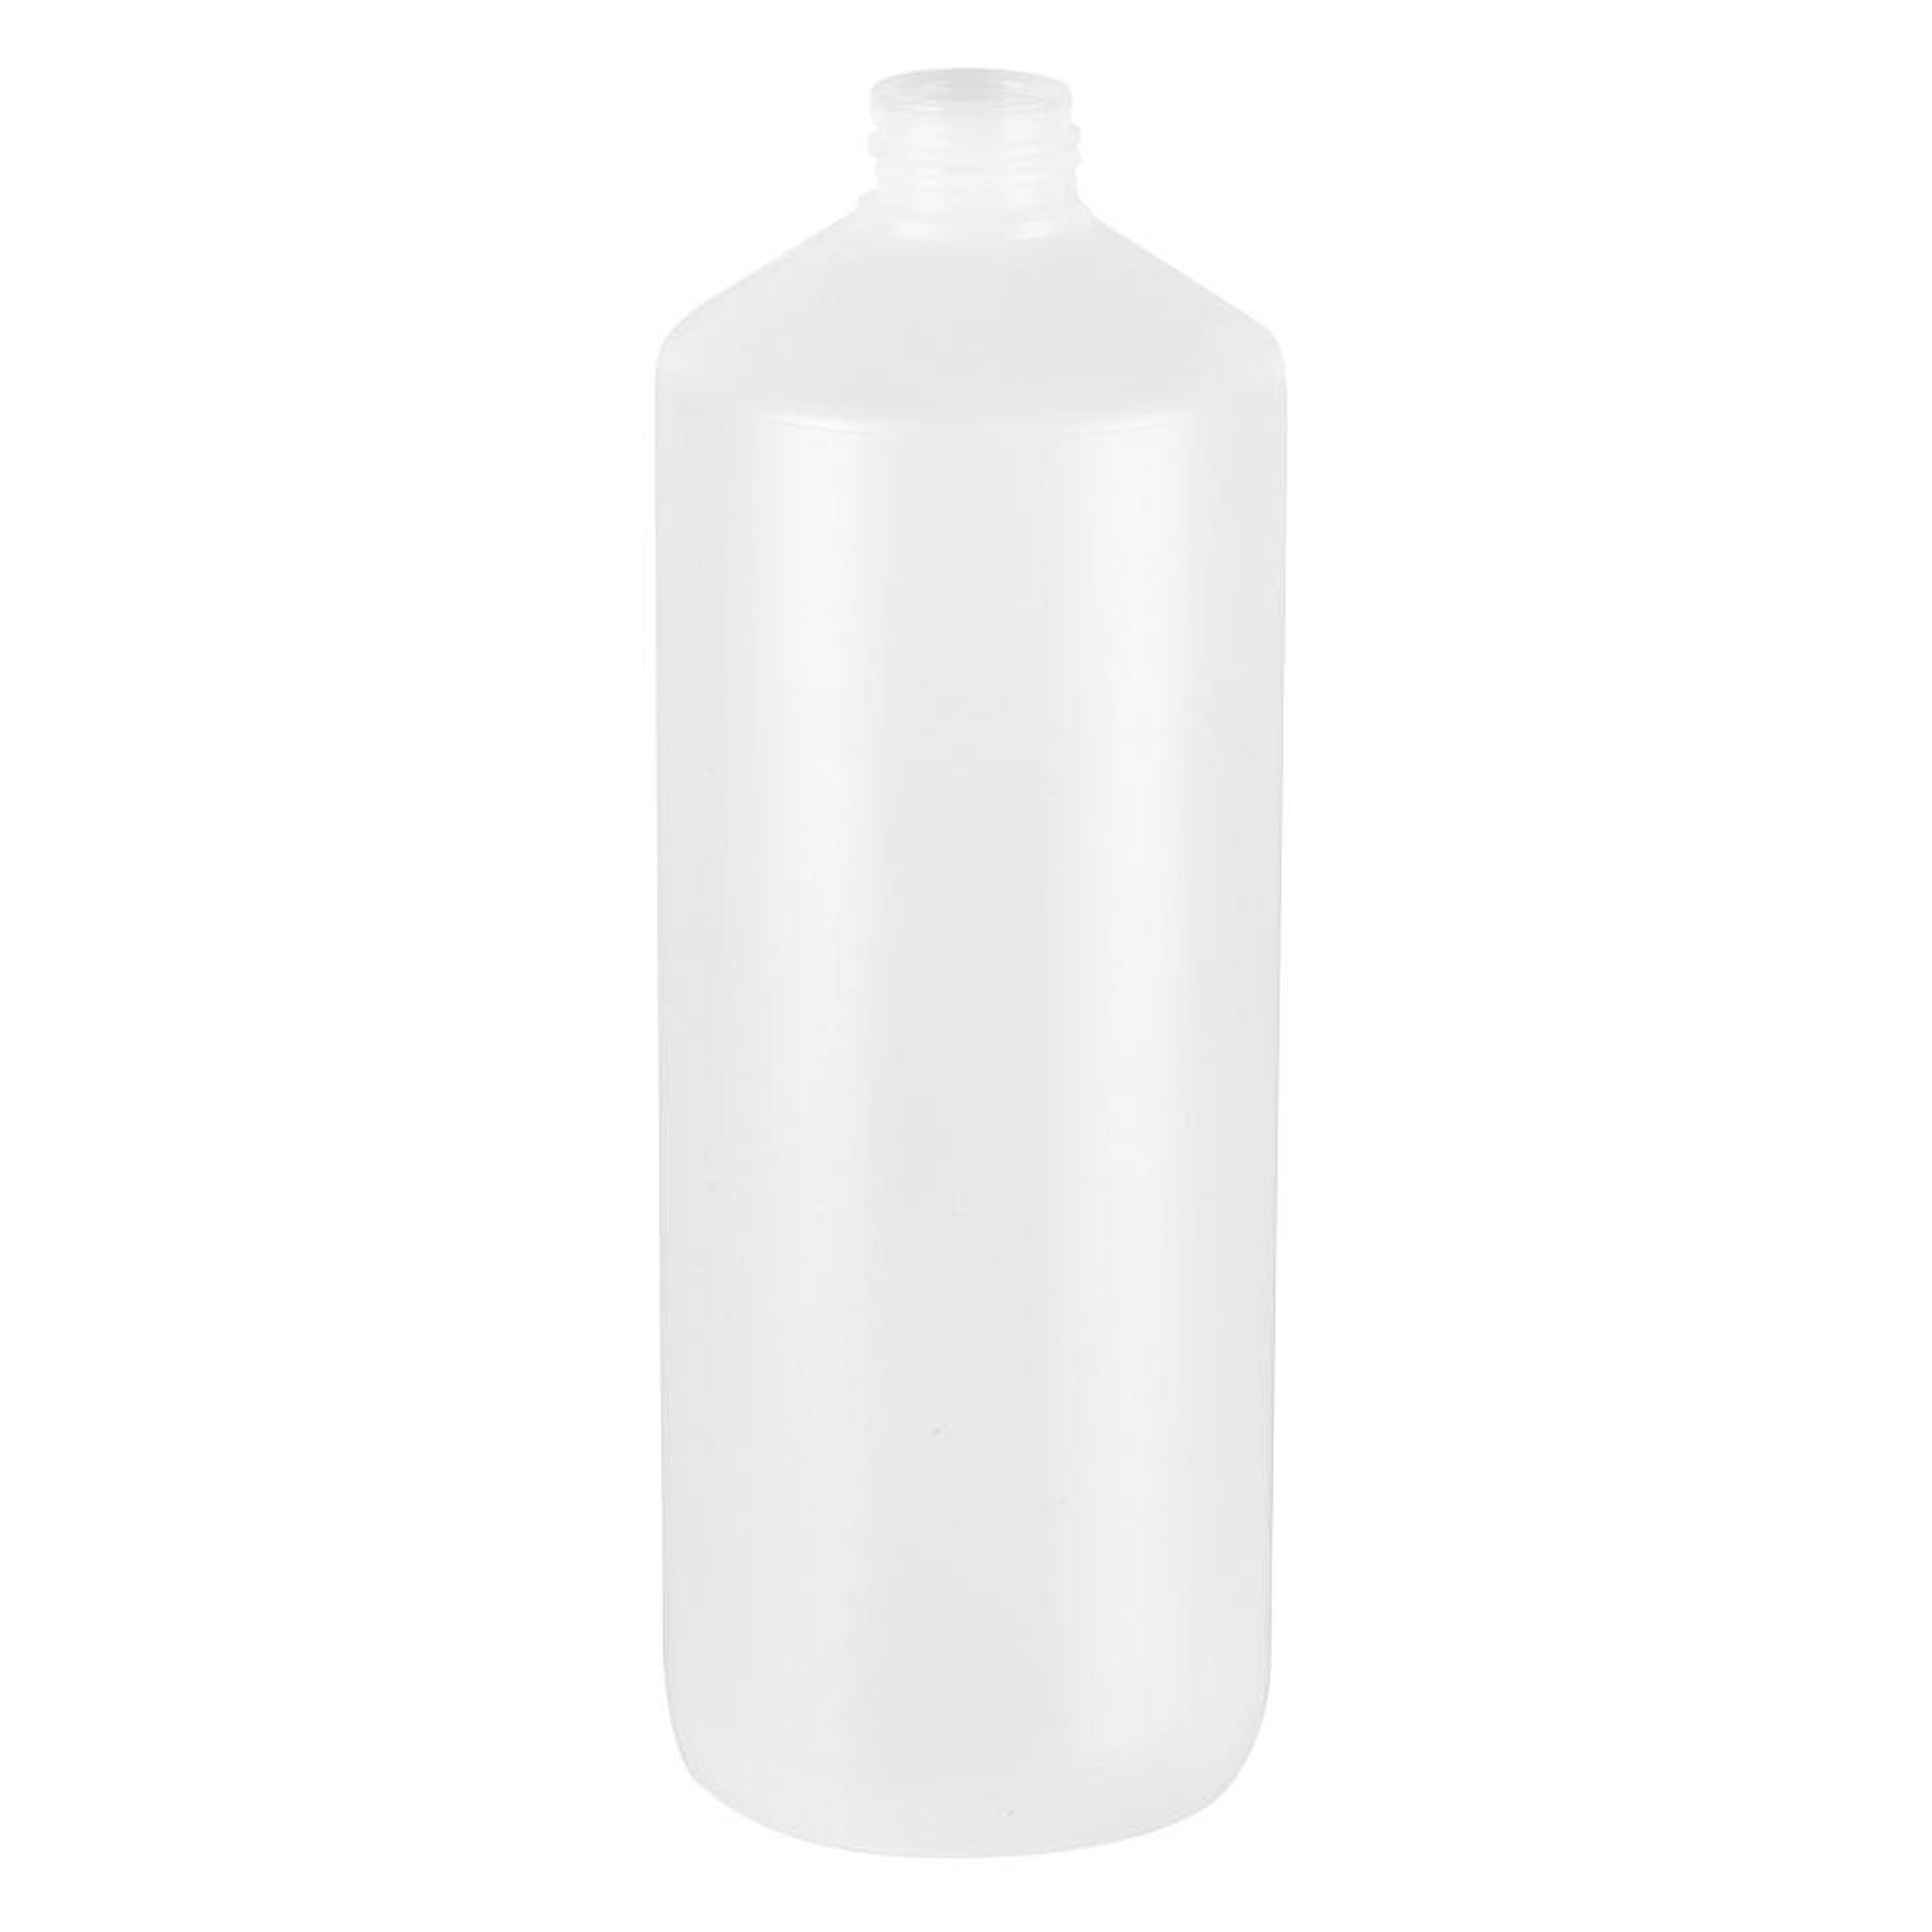 GROHE Flacon pour distributeur savon synthétique Blanc mat - 48169000 